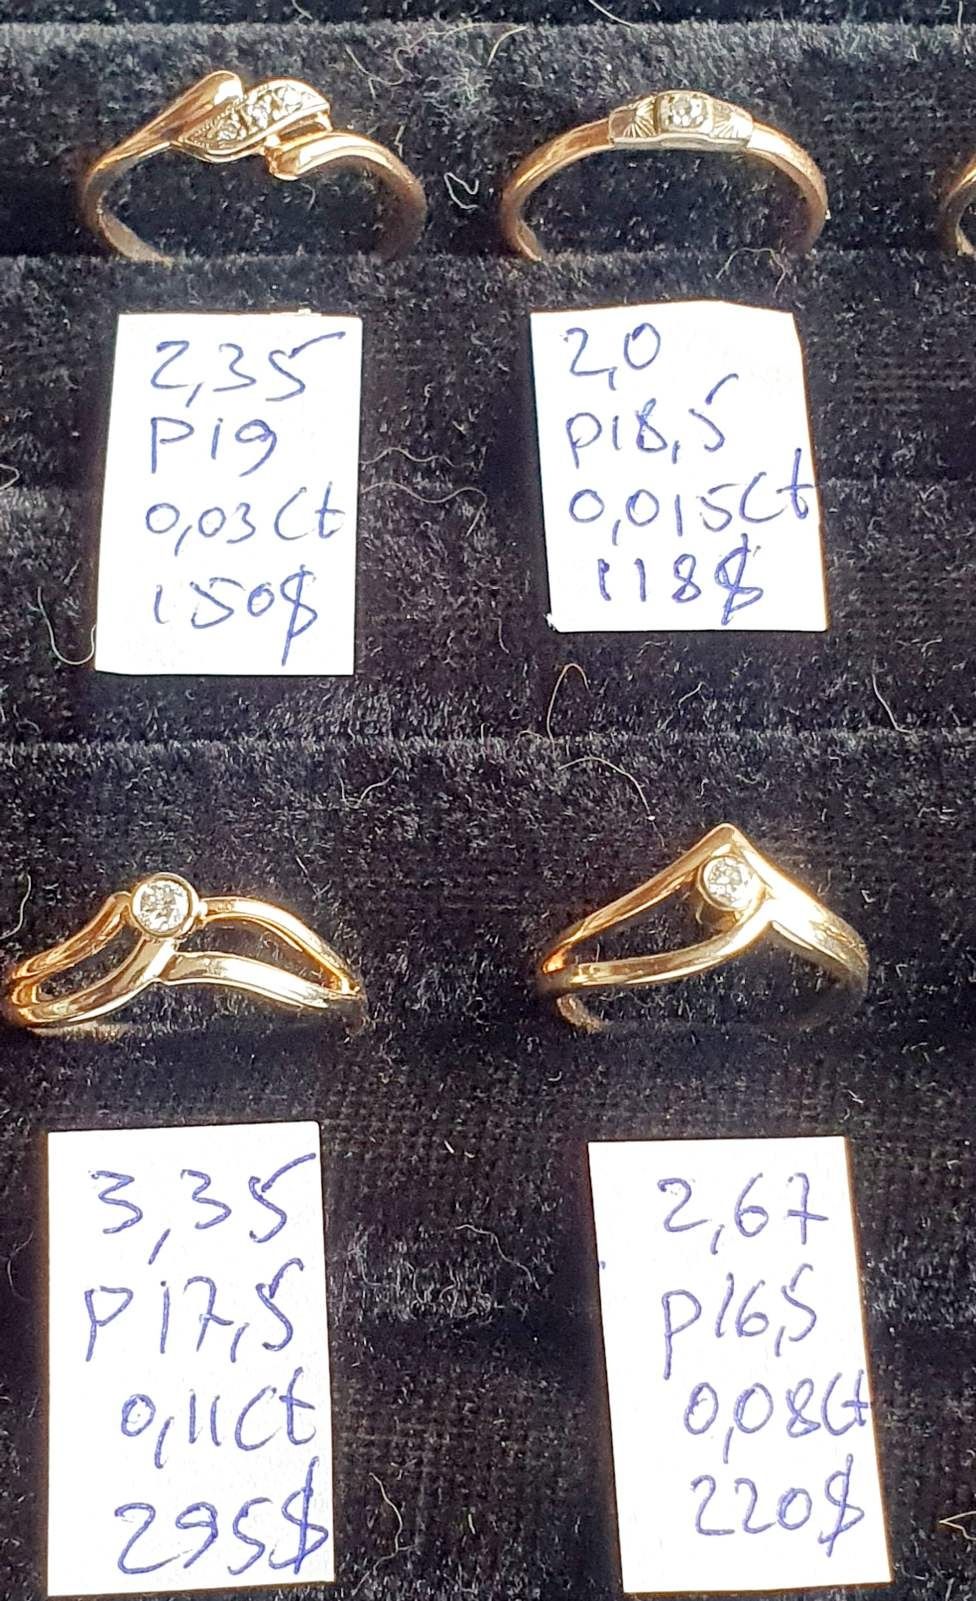 Продам золотые изделия с бриллиантами современные и производства СССР